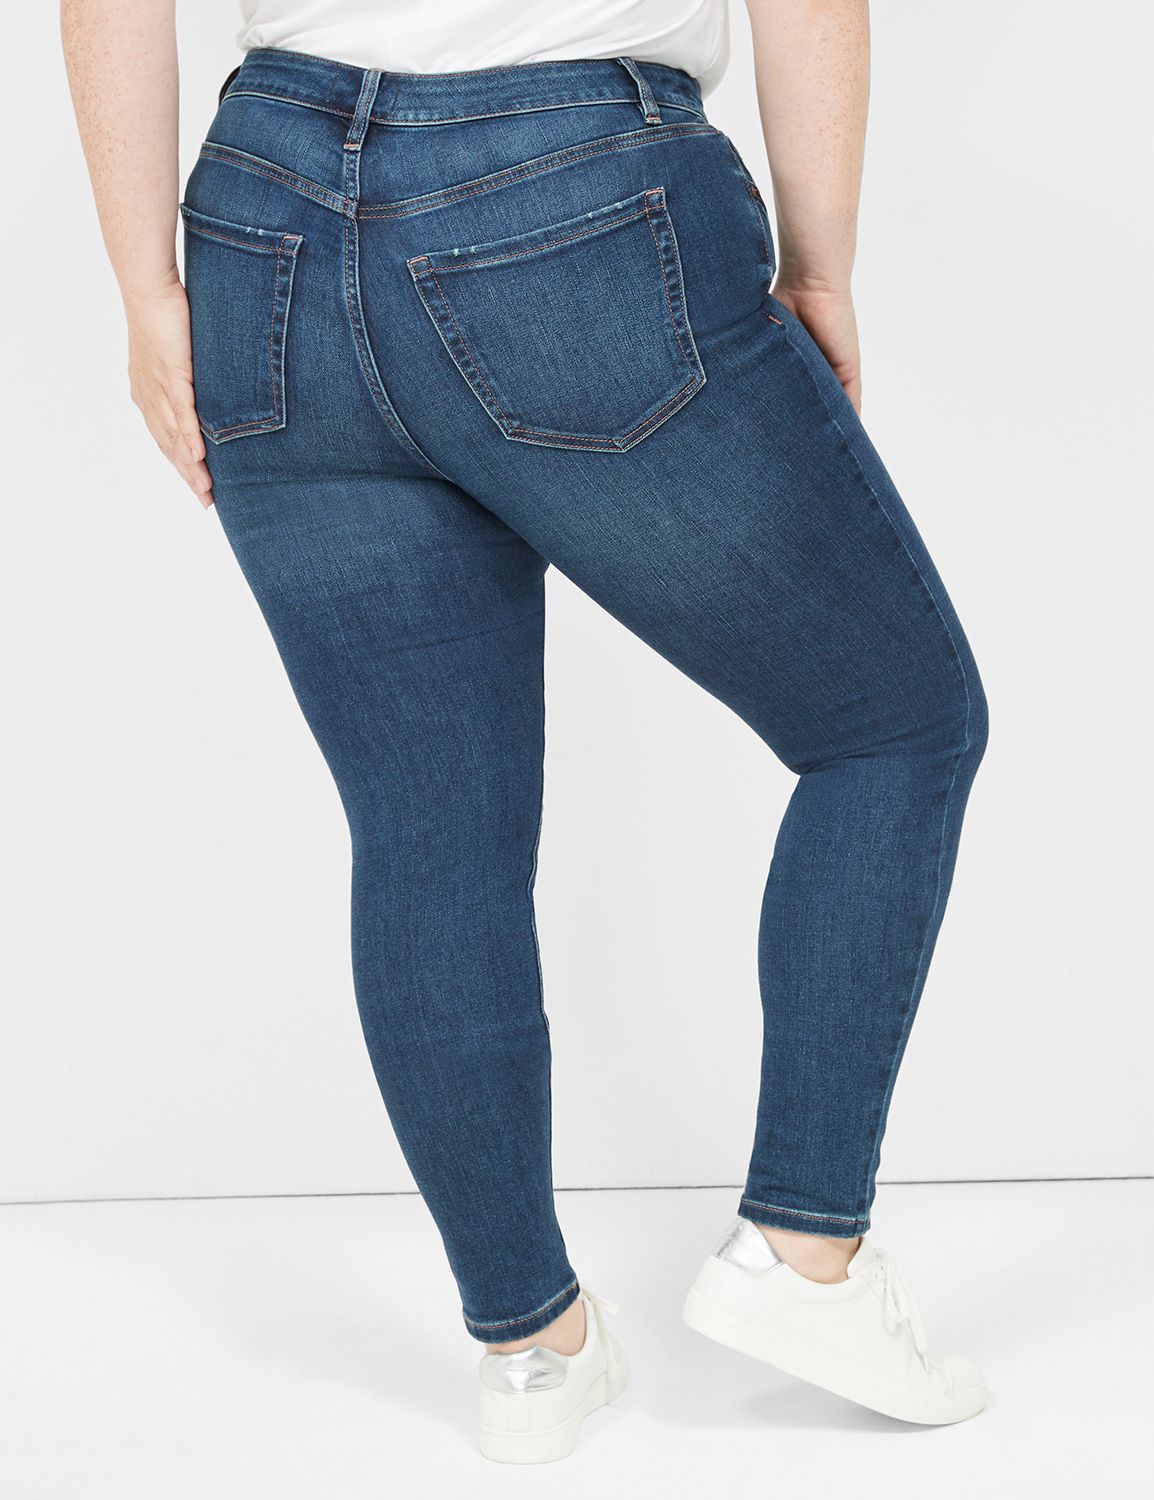 Women's Signature Super Stretch Jeans, High-Rise Skinny-Leg